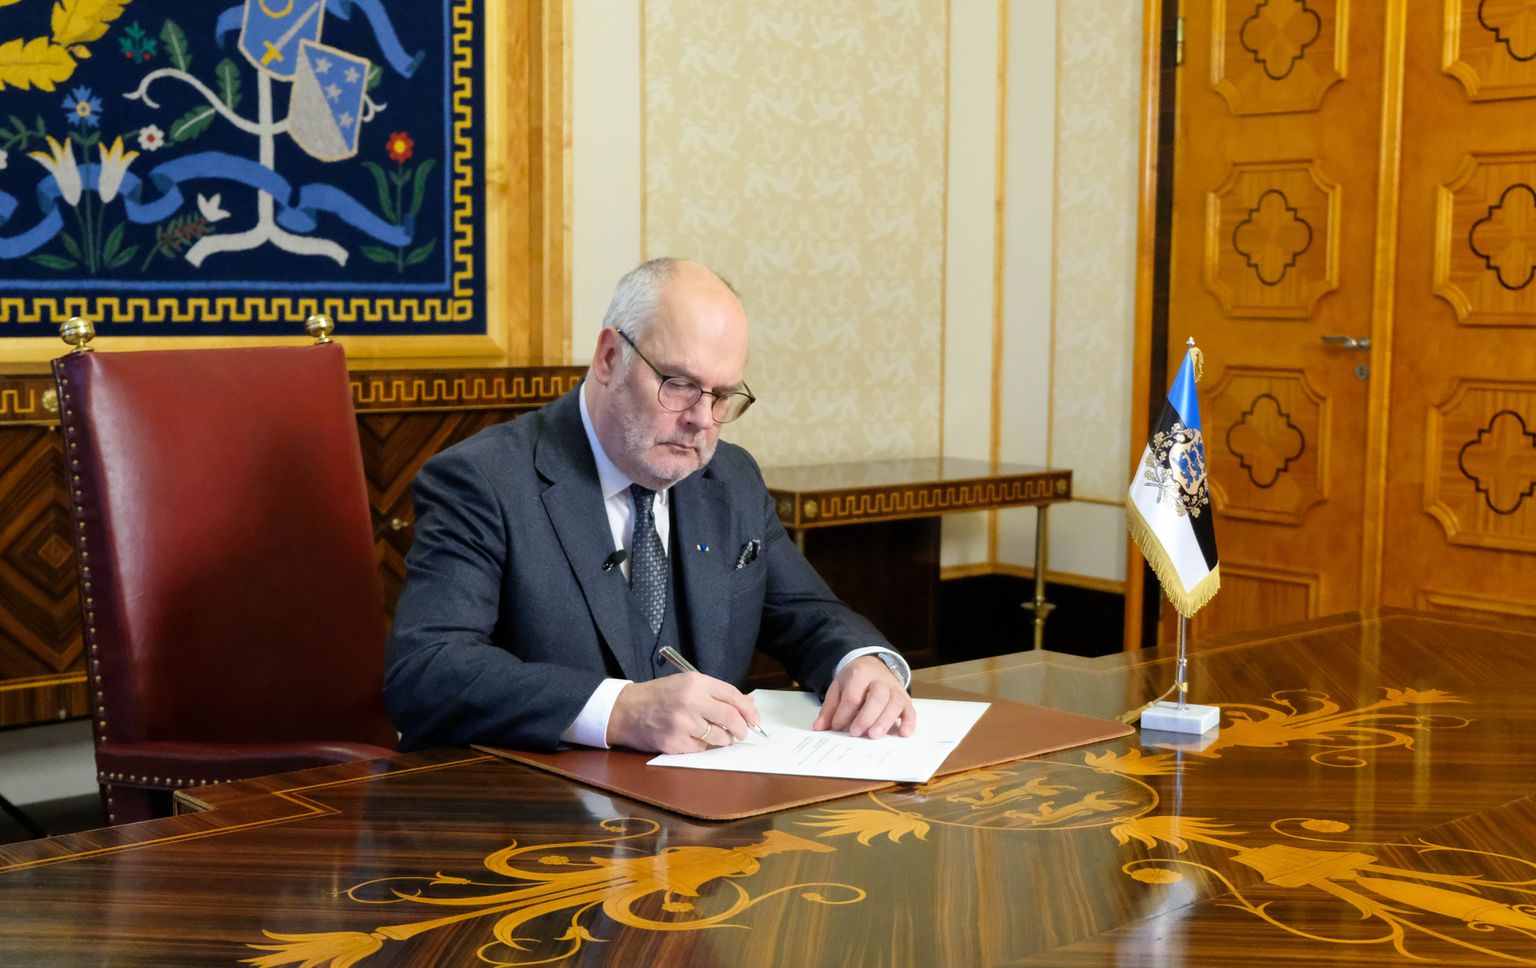 Алар Карис подписал указ об объявлении 5 марта будущего года днем выборов в Рийгикогу.